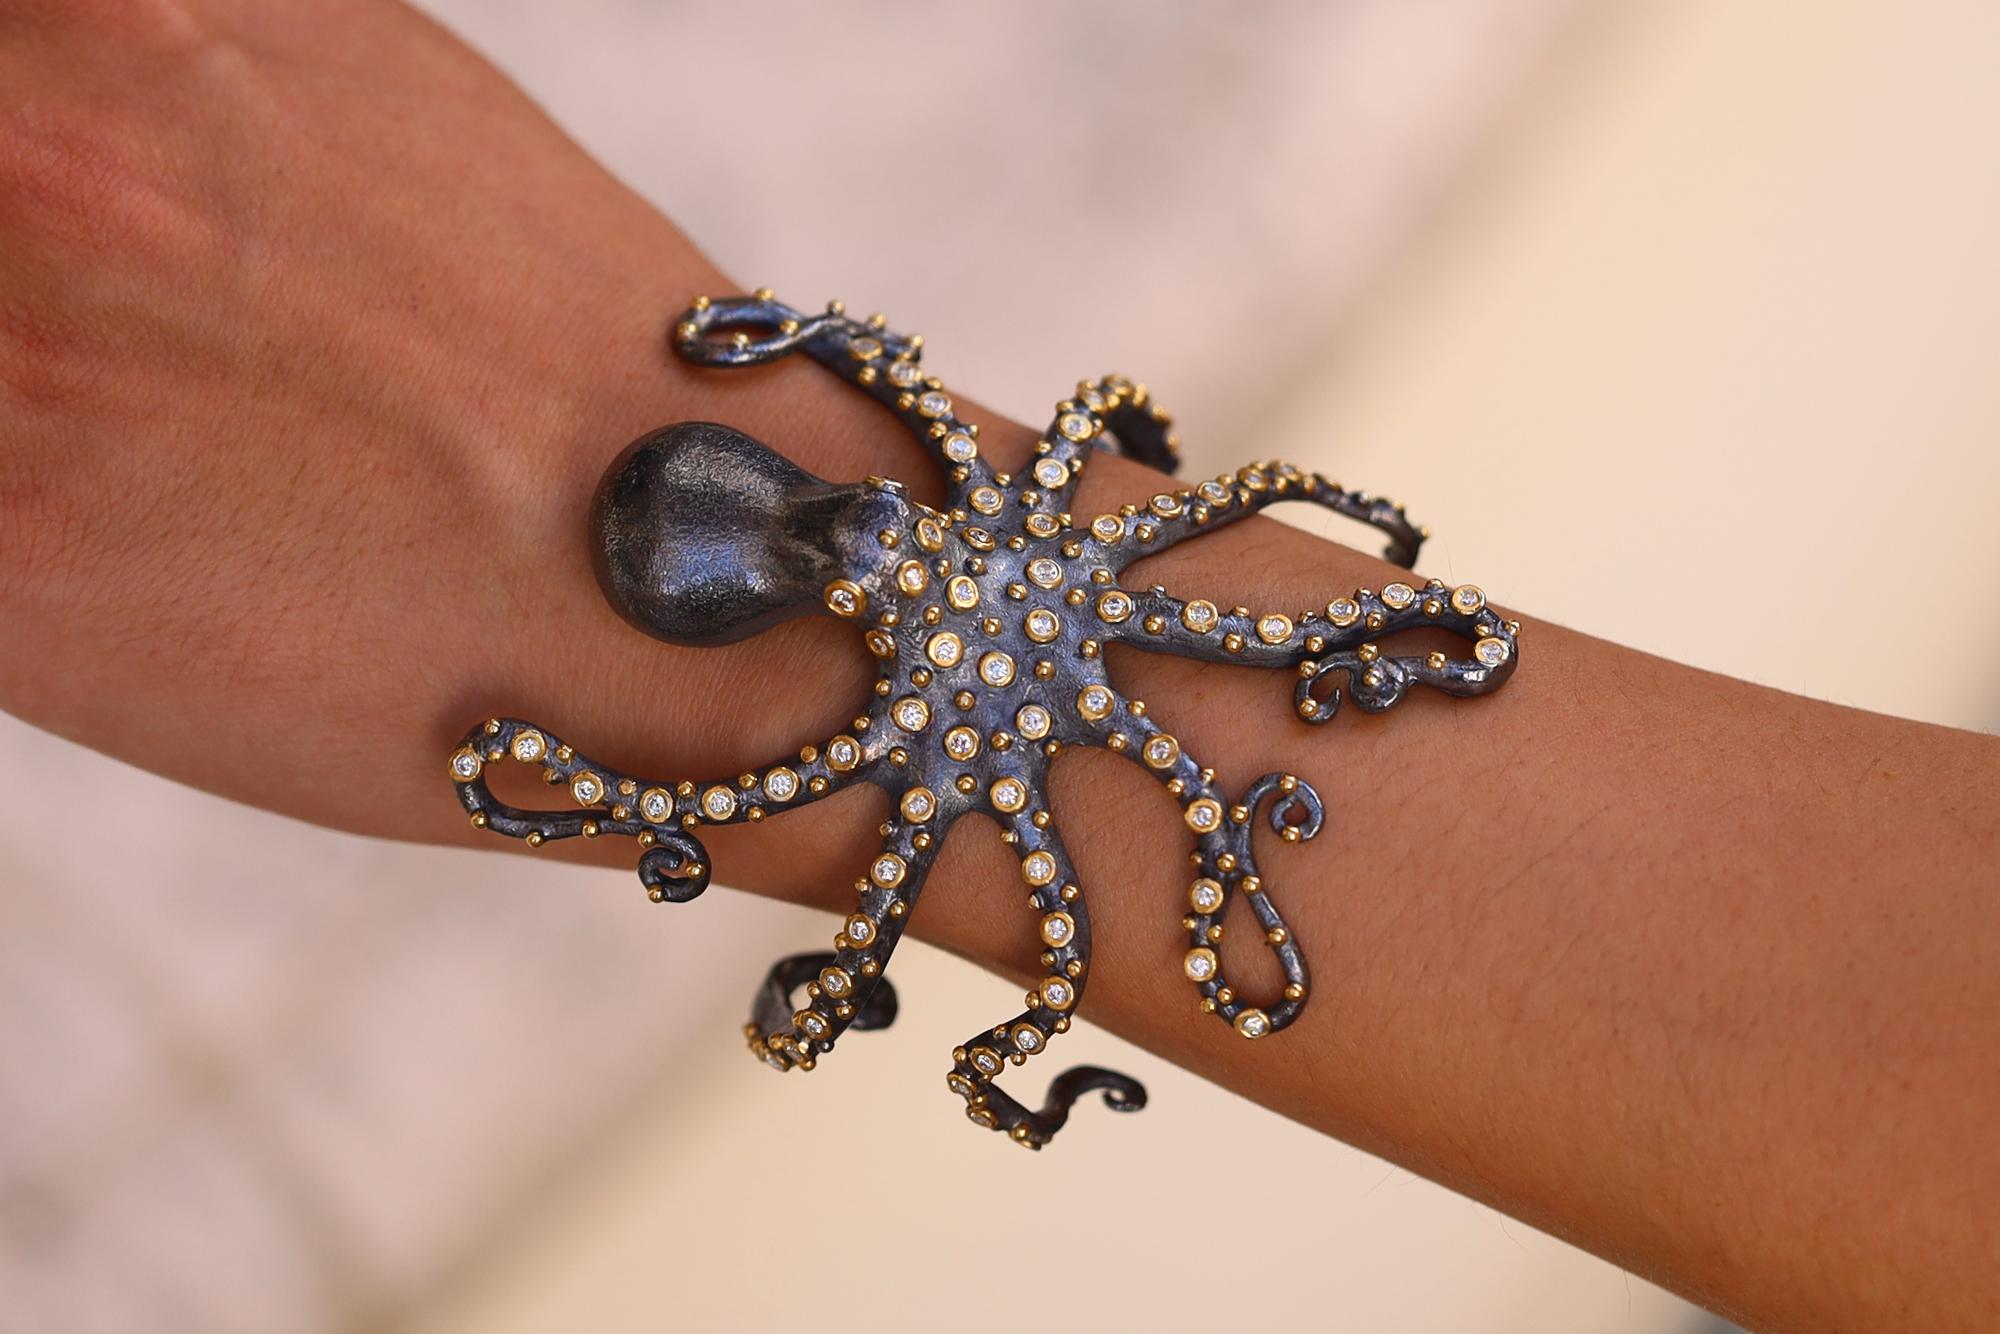 Dieses herausragende Oktopus-Armband mit Diamant-Tentakeln ist kunstvoll in reichem 24-karätigem Gold und oxidiertem 2-Ton-Sterlingsilber gefertigt. Dieses Meerestier mit seinen stechenden, farblosen Diamantaugen und funkelnden Akzenten von